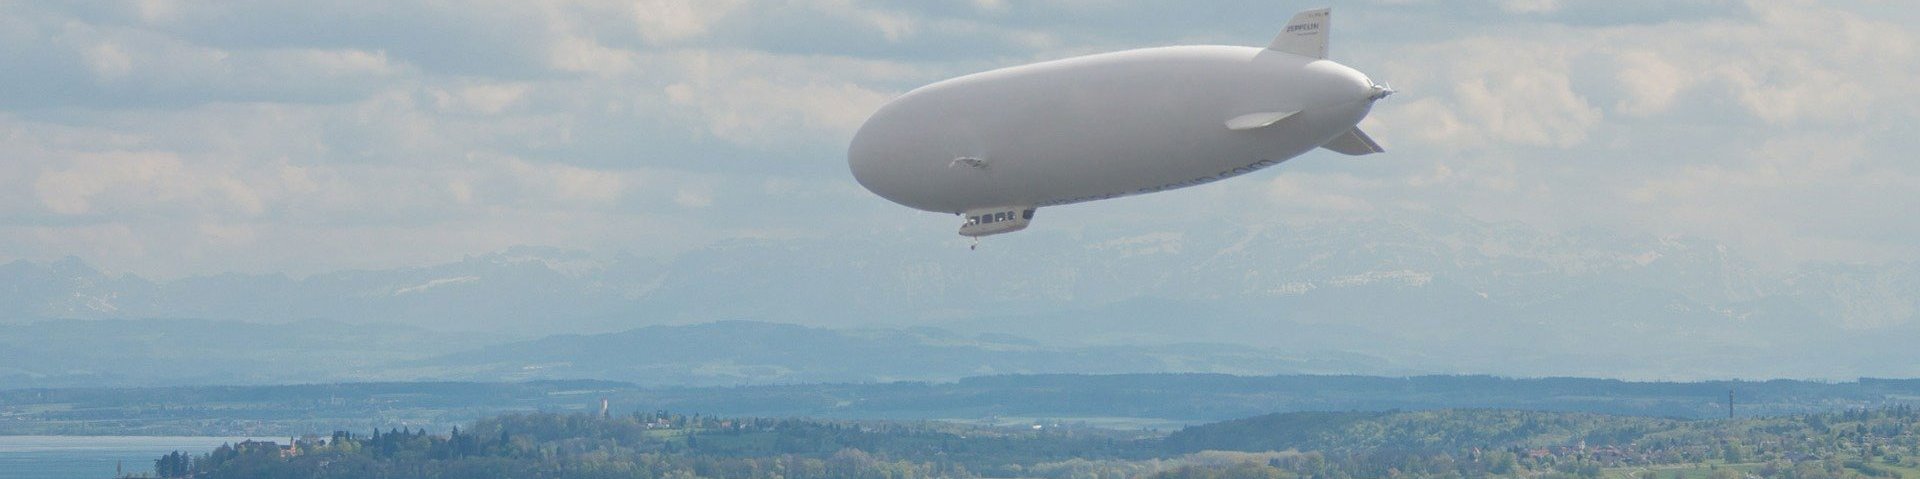 Sicht auf den Bodennsee über dem ein Zeppelin fliegt.